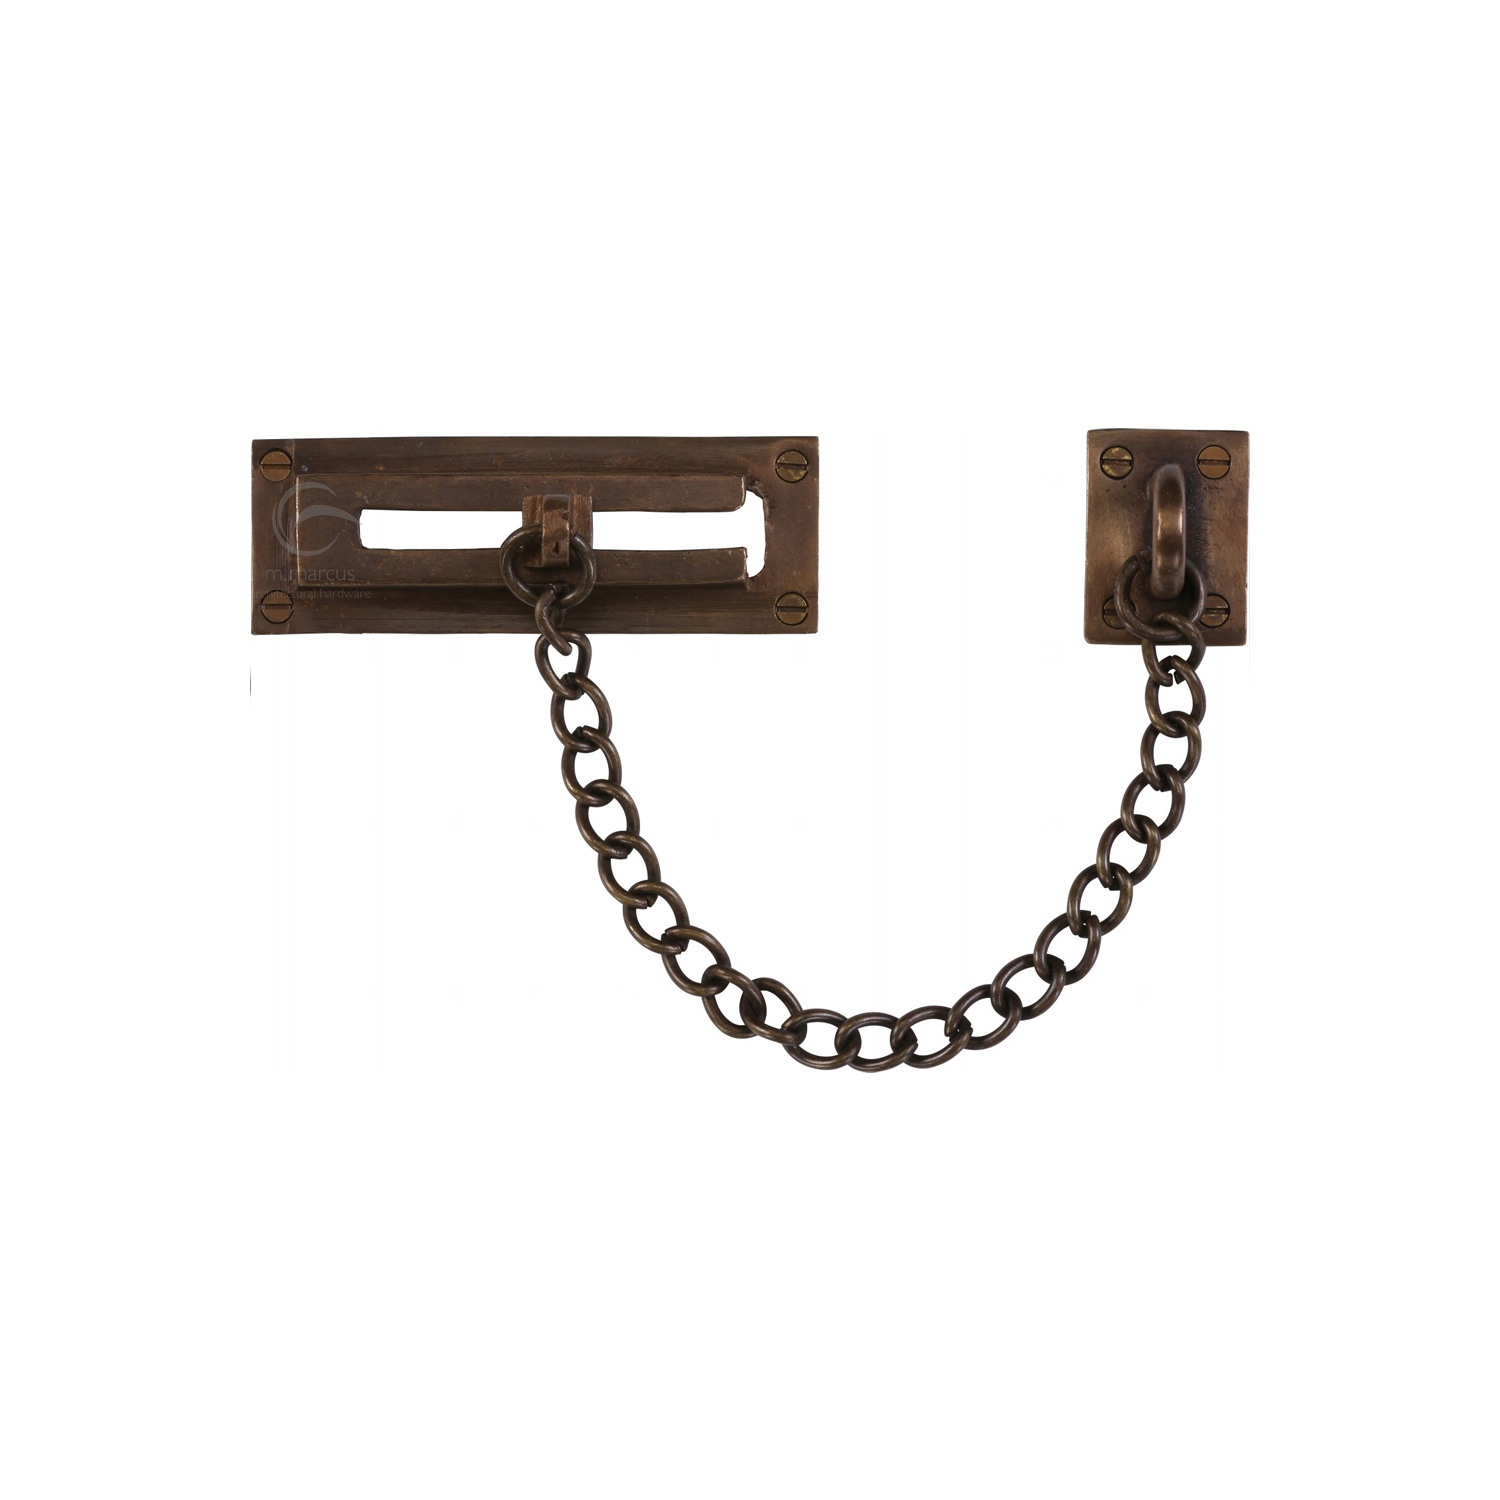 Solid Bronze Door Chain